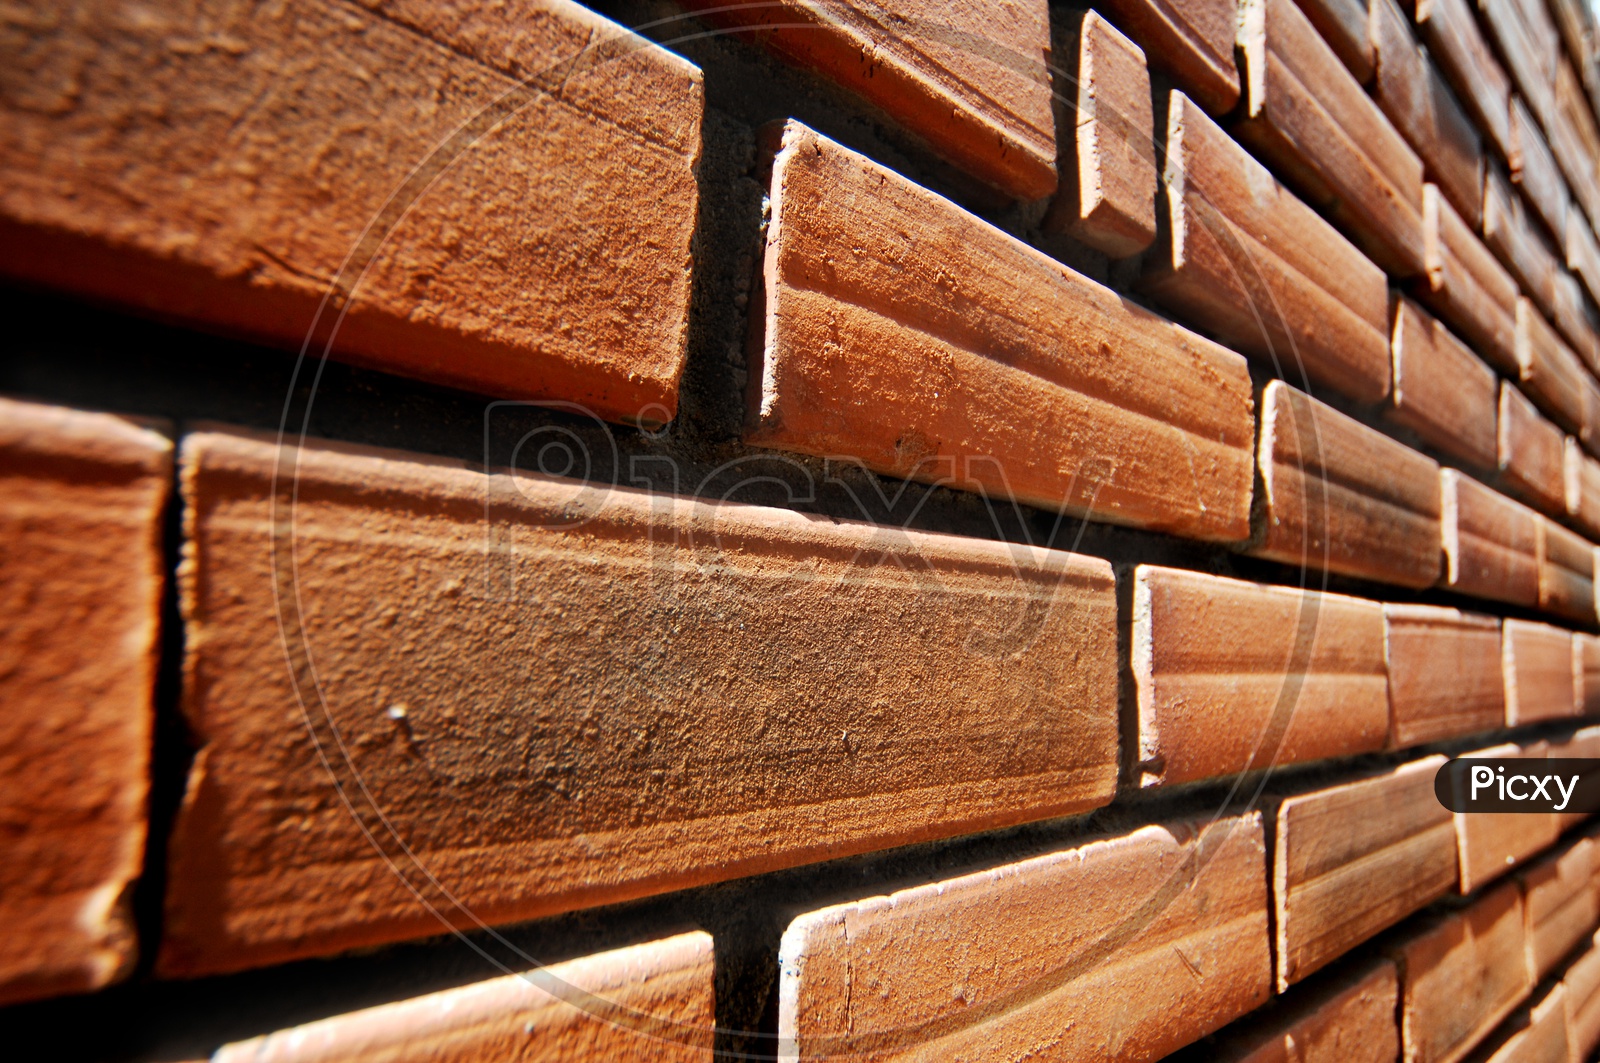 Brick wall pattern